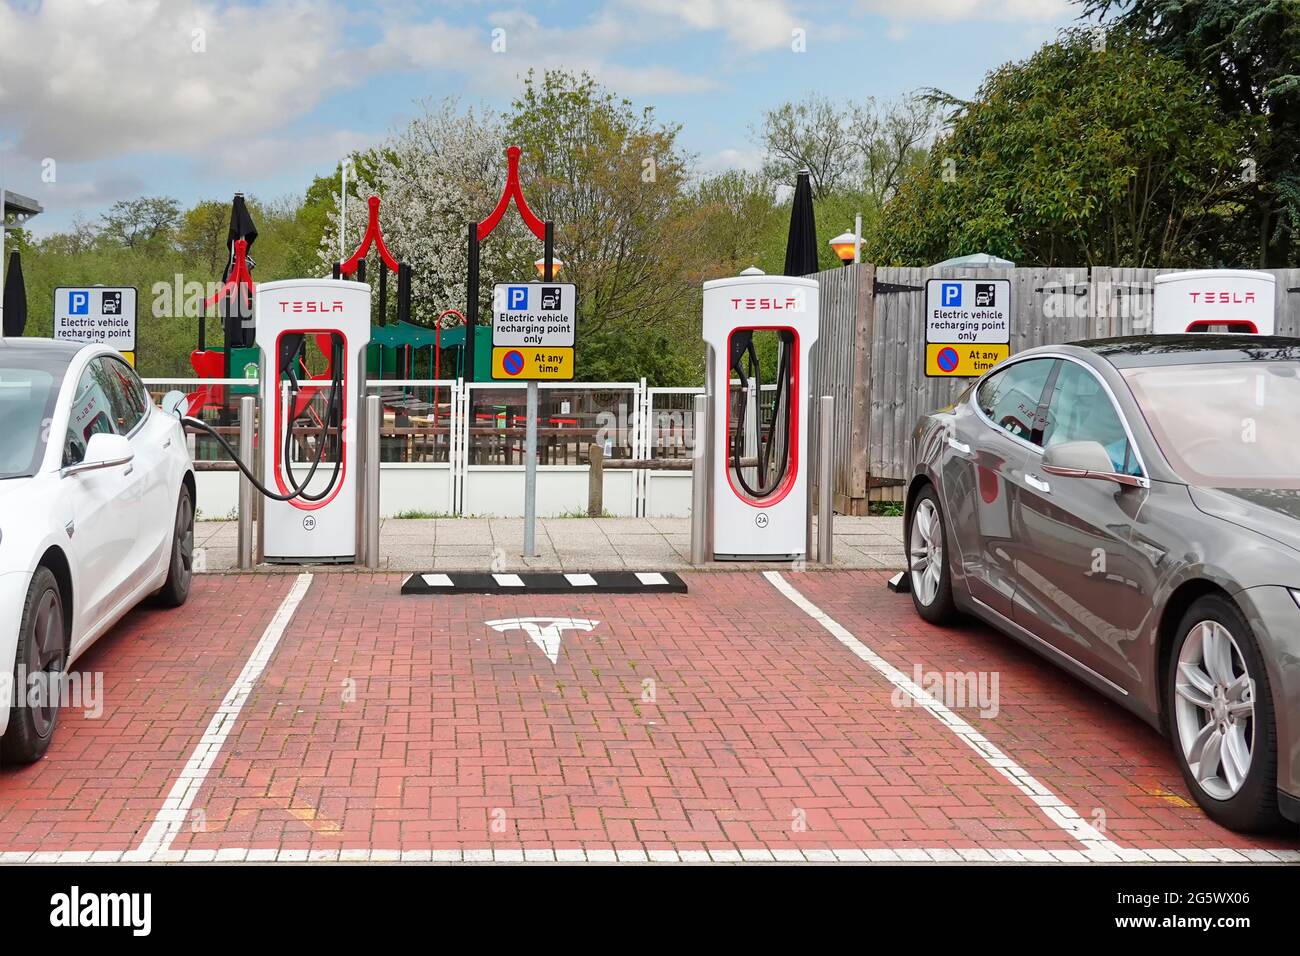 Les voitures électriques reliées au compresseur Tesla stall dans les baies de stationnement de l'installation Welcome Break sur la station-service de l'autoroute M42 Alvechurch Birmingham Royaume-Uni Banque D'Images